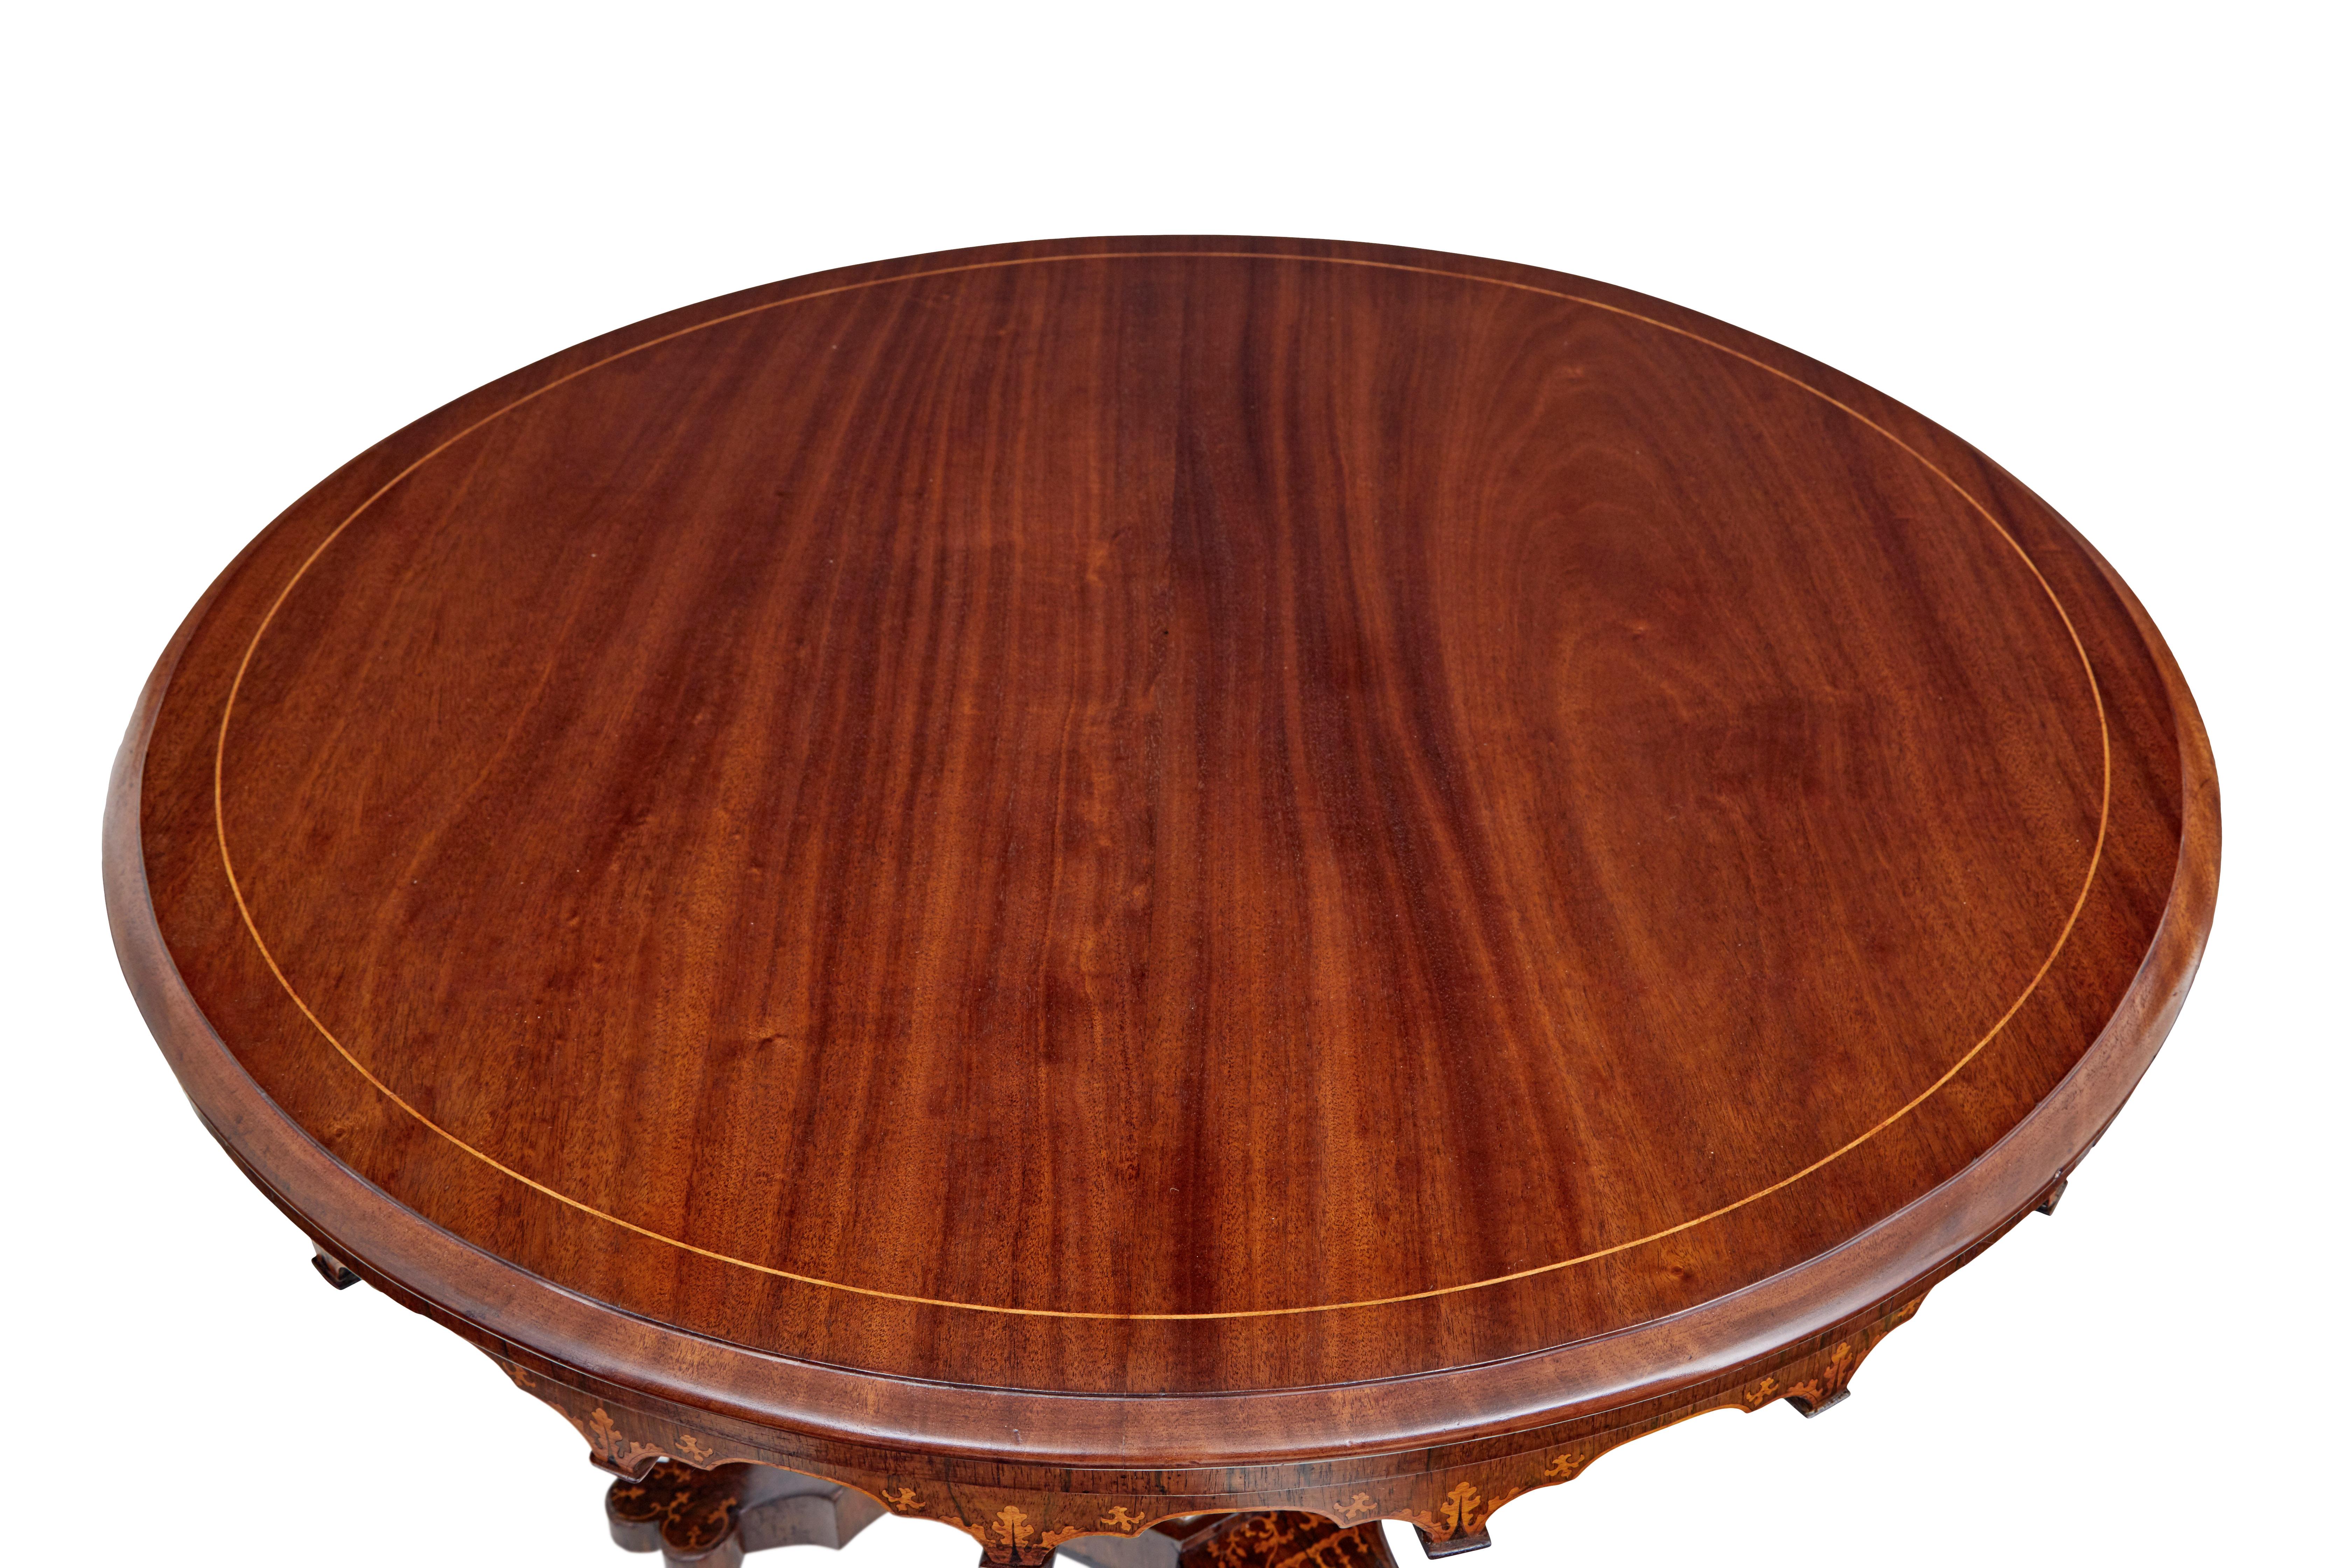 Mahogany 19th century French inlaid mahogany center table